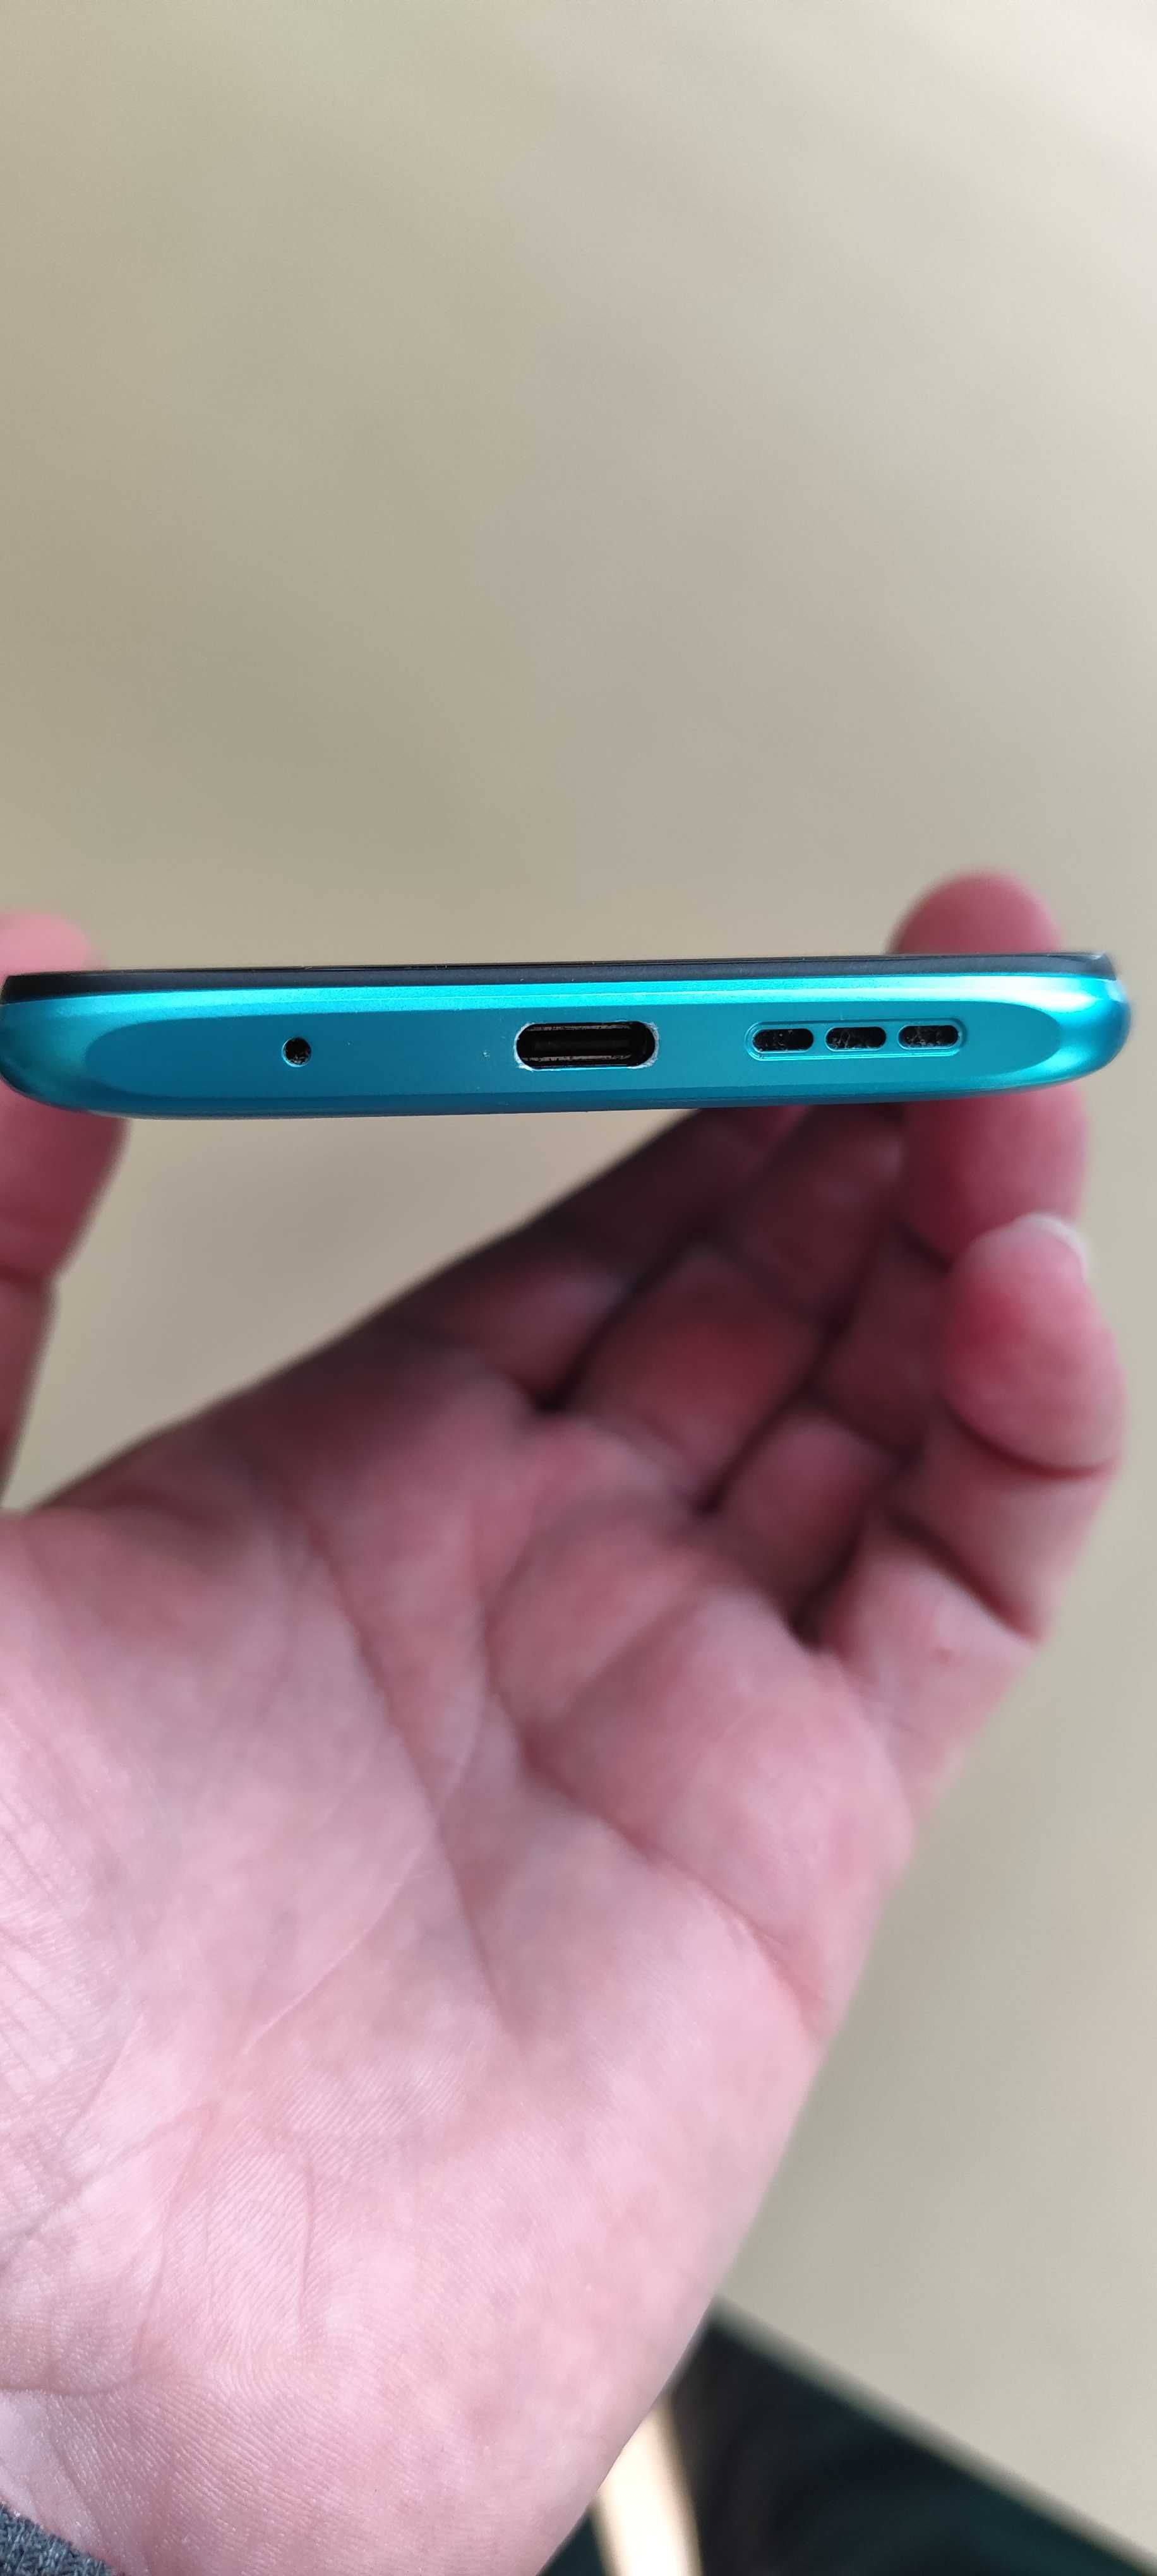 Xiaomi Redmi 9T NFC 4/64GB